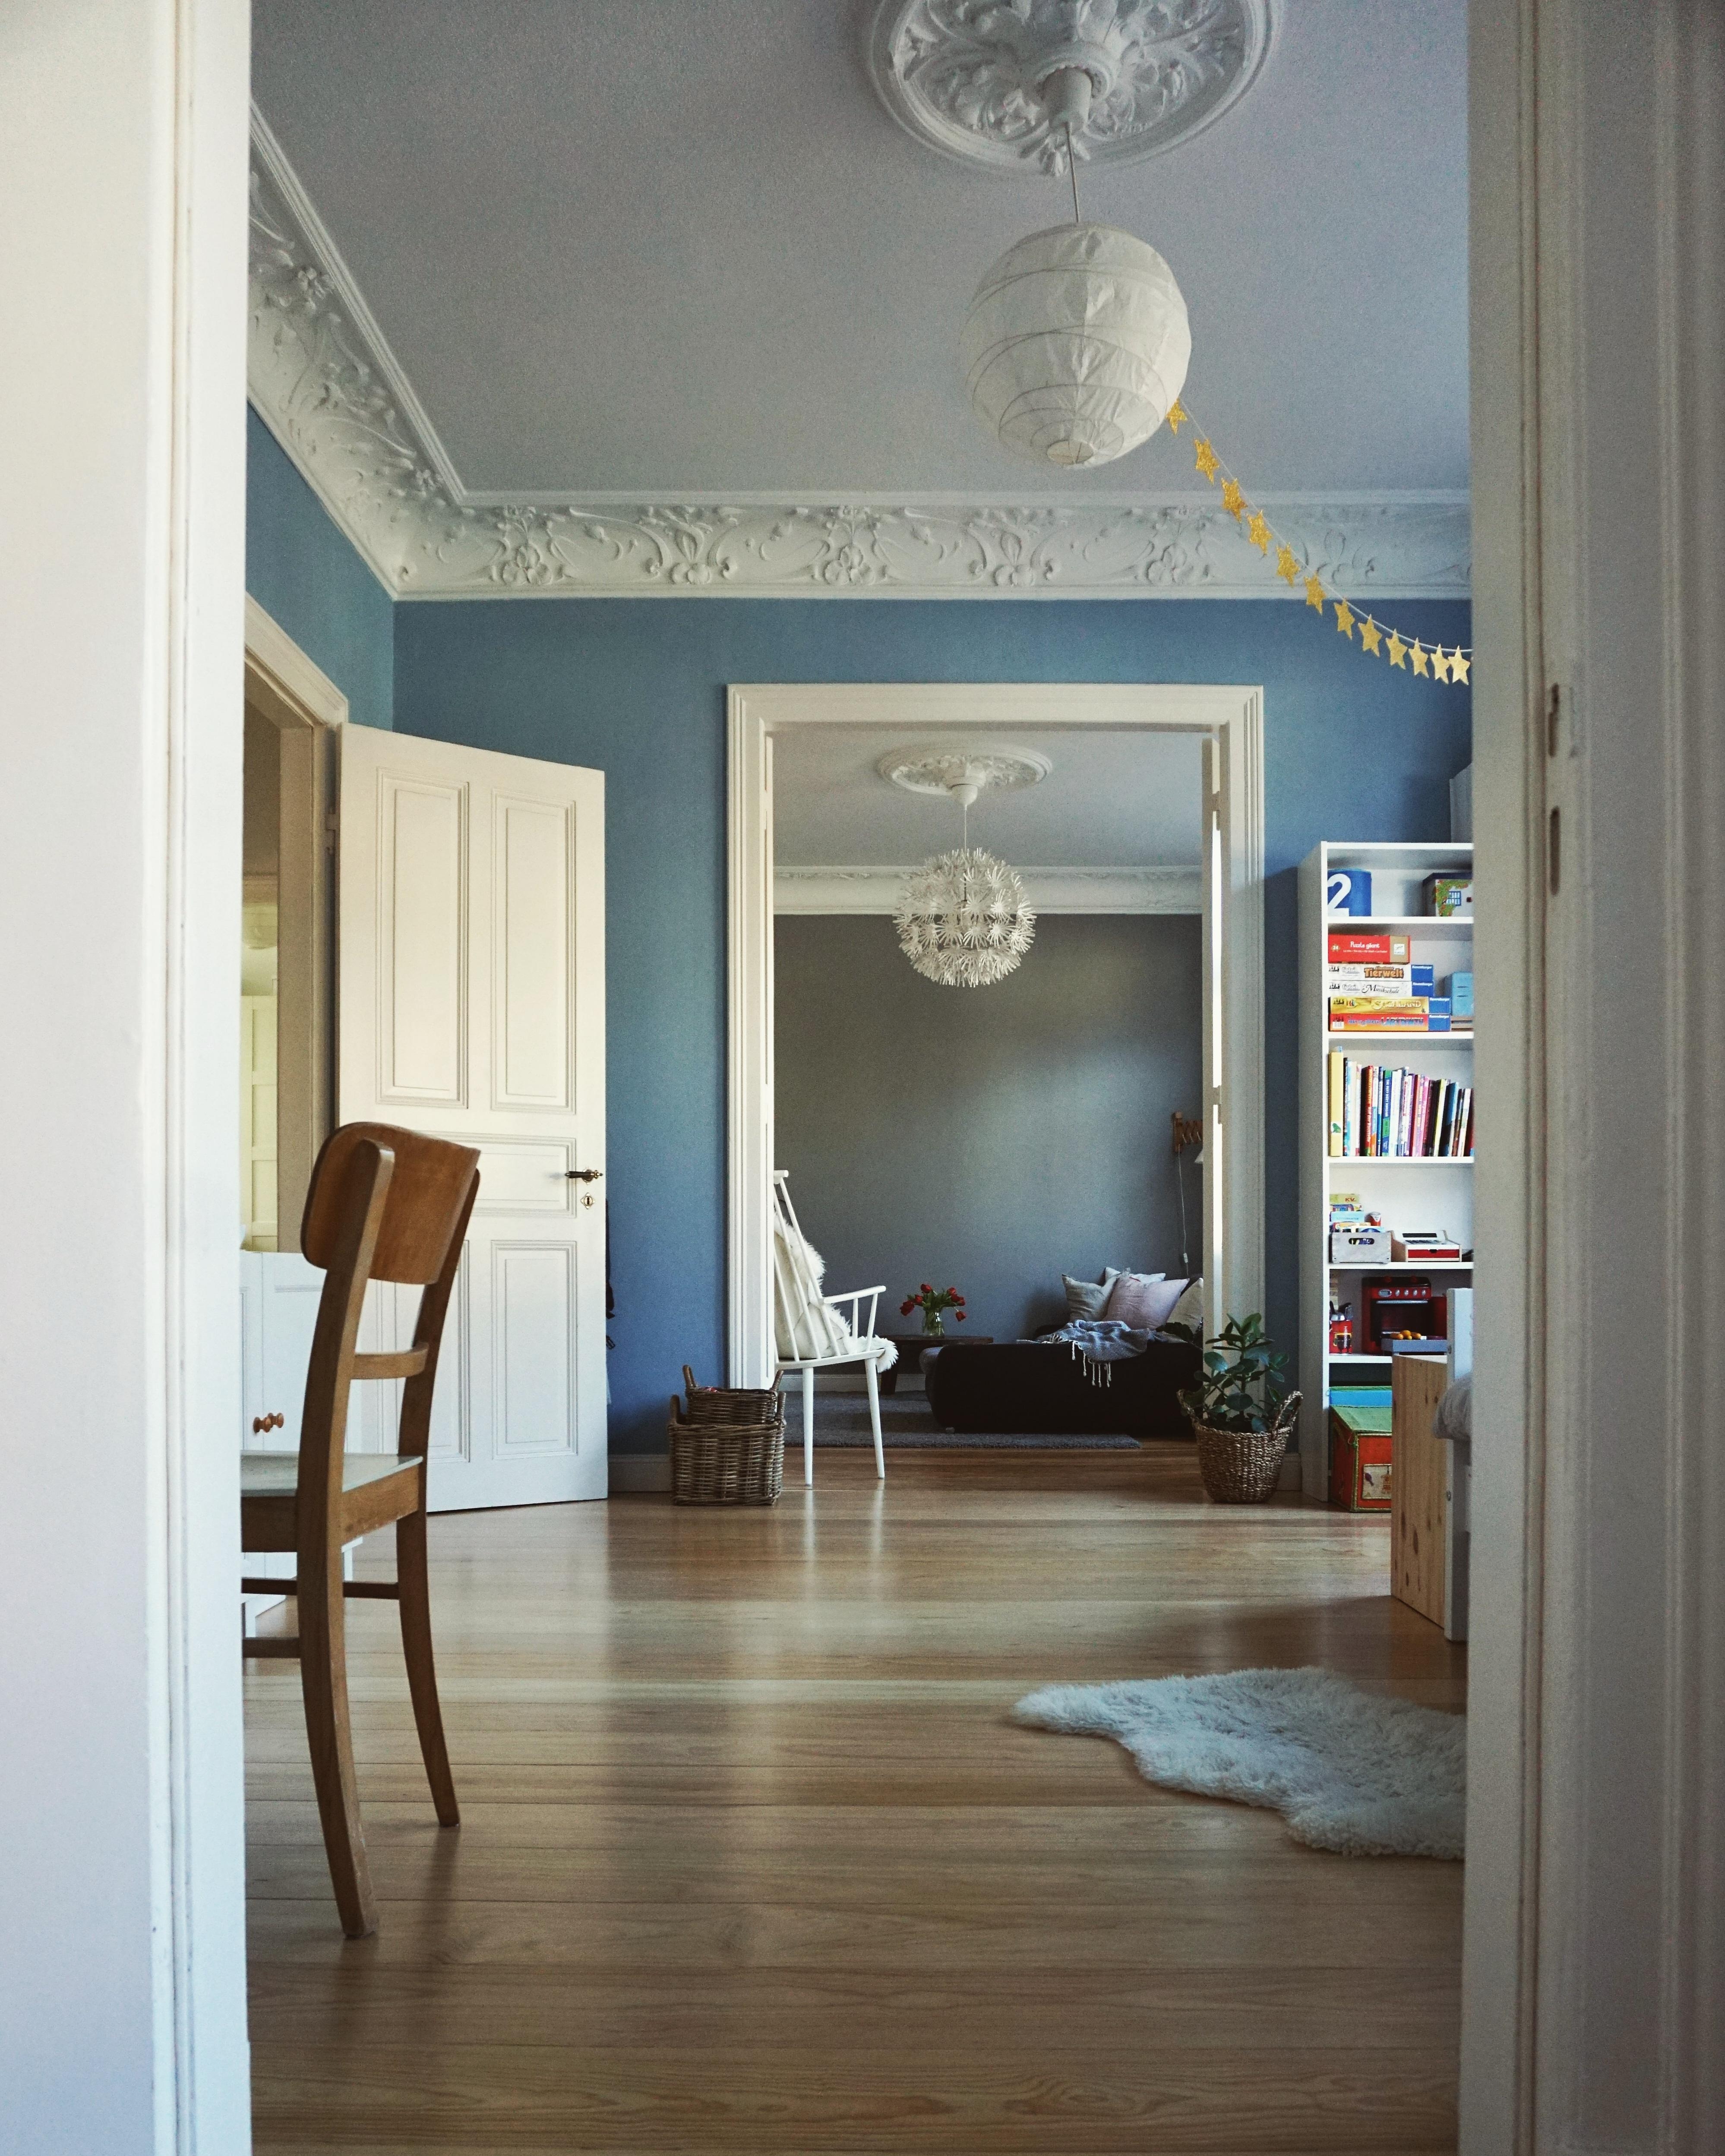 Durchblick 💙 #Durchblick #Wohnzimmer #Kinderzimmer #blaueWand #Altbau #Altbauliebe 